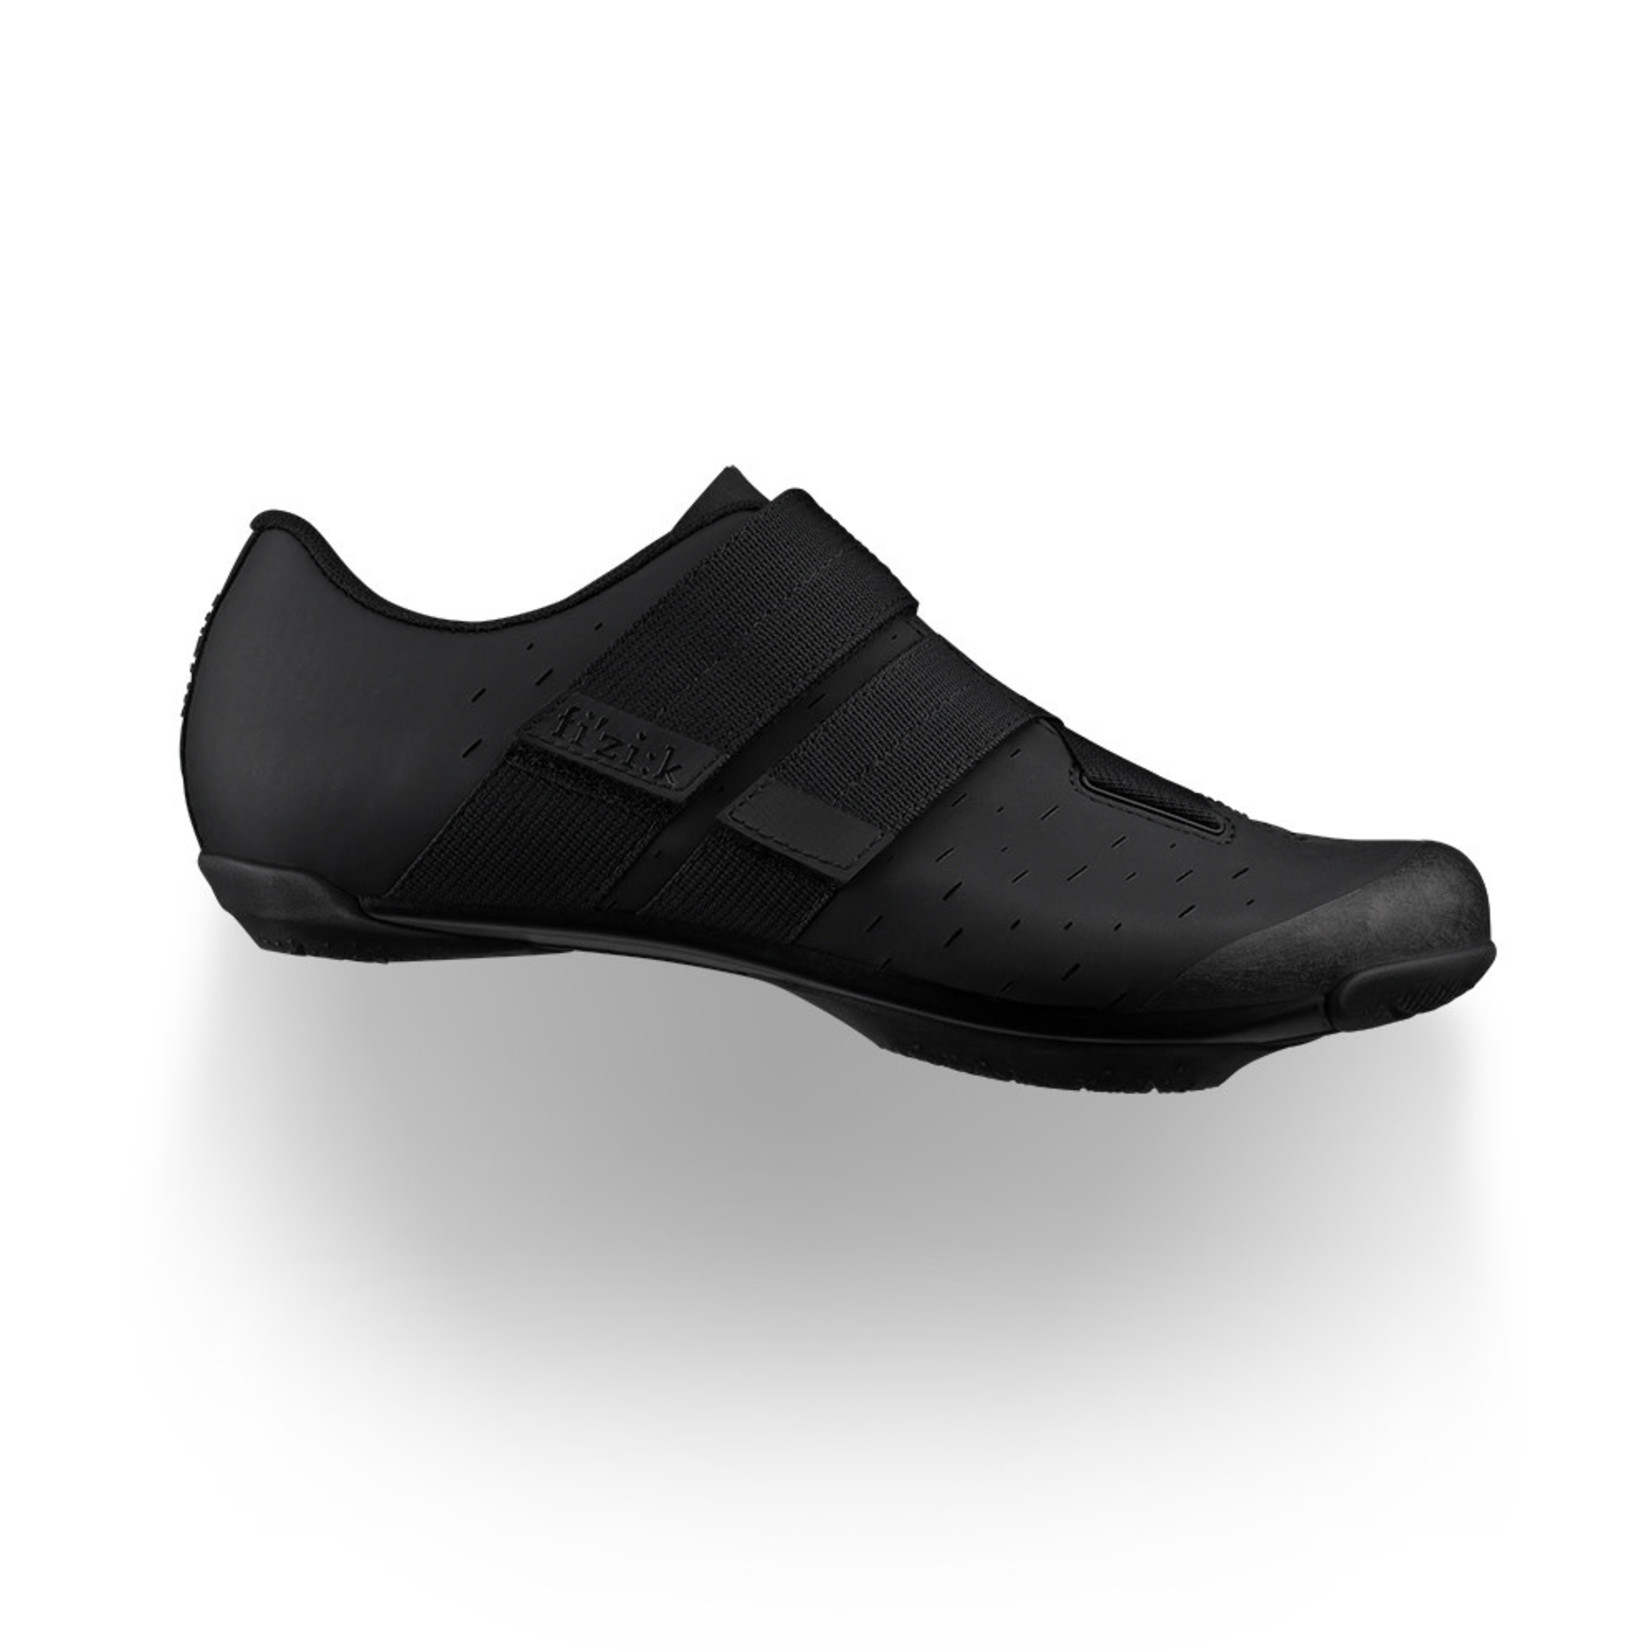 Fizik Fizik X4 Terra Powerstrap Mountain Shoes Leather - Black/Black X4 Nylon Outsole